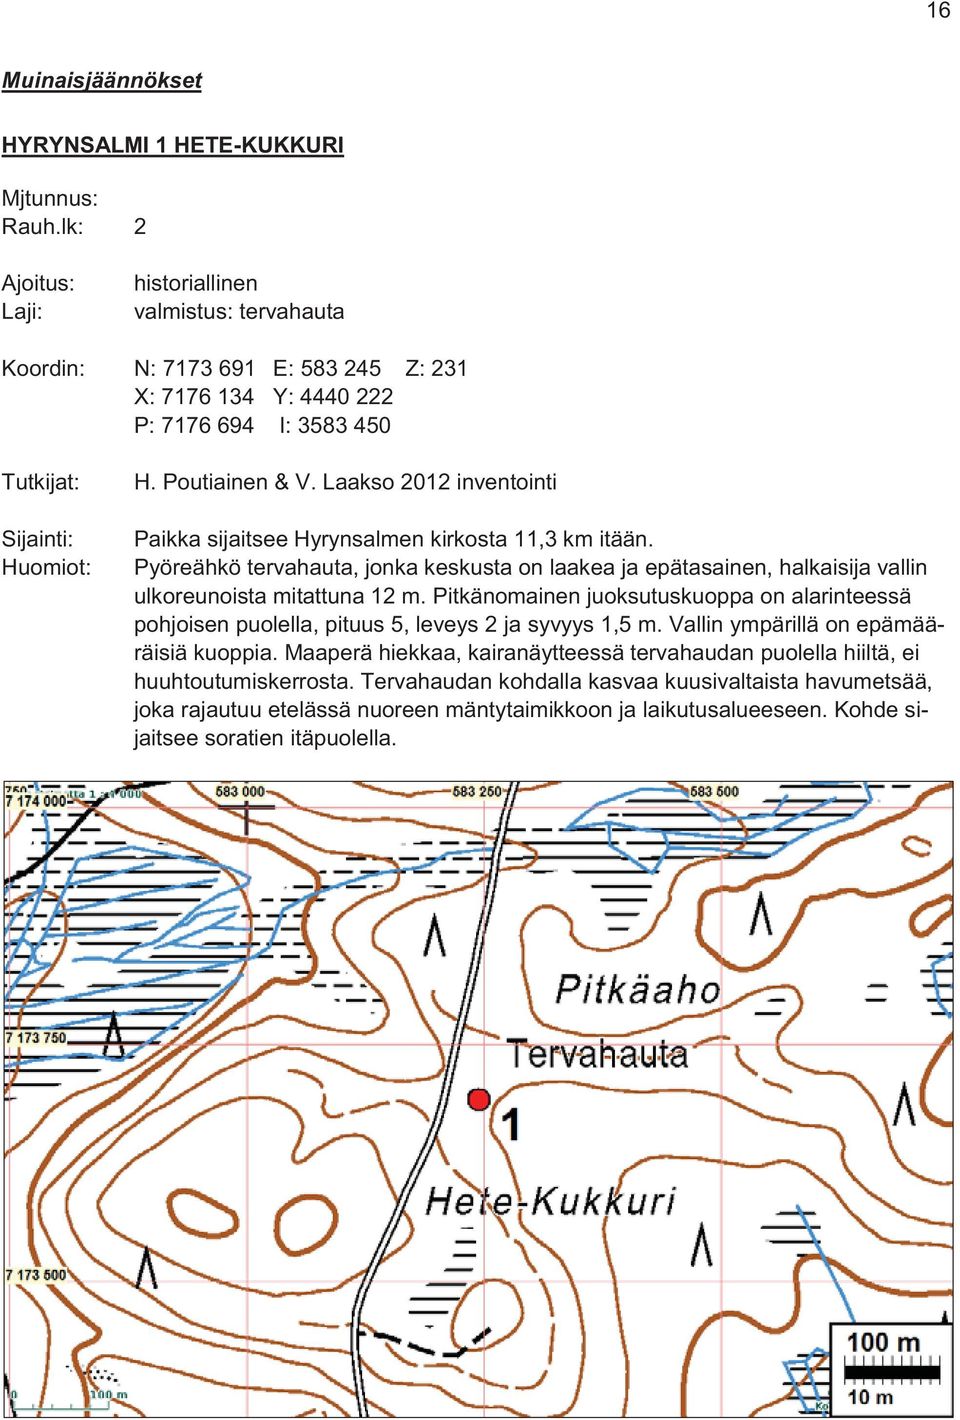 Laakso 2012 inventointi Paikka sijaitsee Hyrynsalmen kirkosta 11,3 km itään. Pyöreähkö tervahauta, jonka keskusta on laakea ja epätasainen, halkaisija vallin ulkoreunoista mitattuna 12 m.